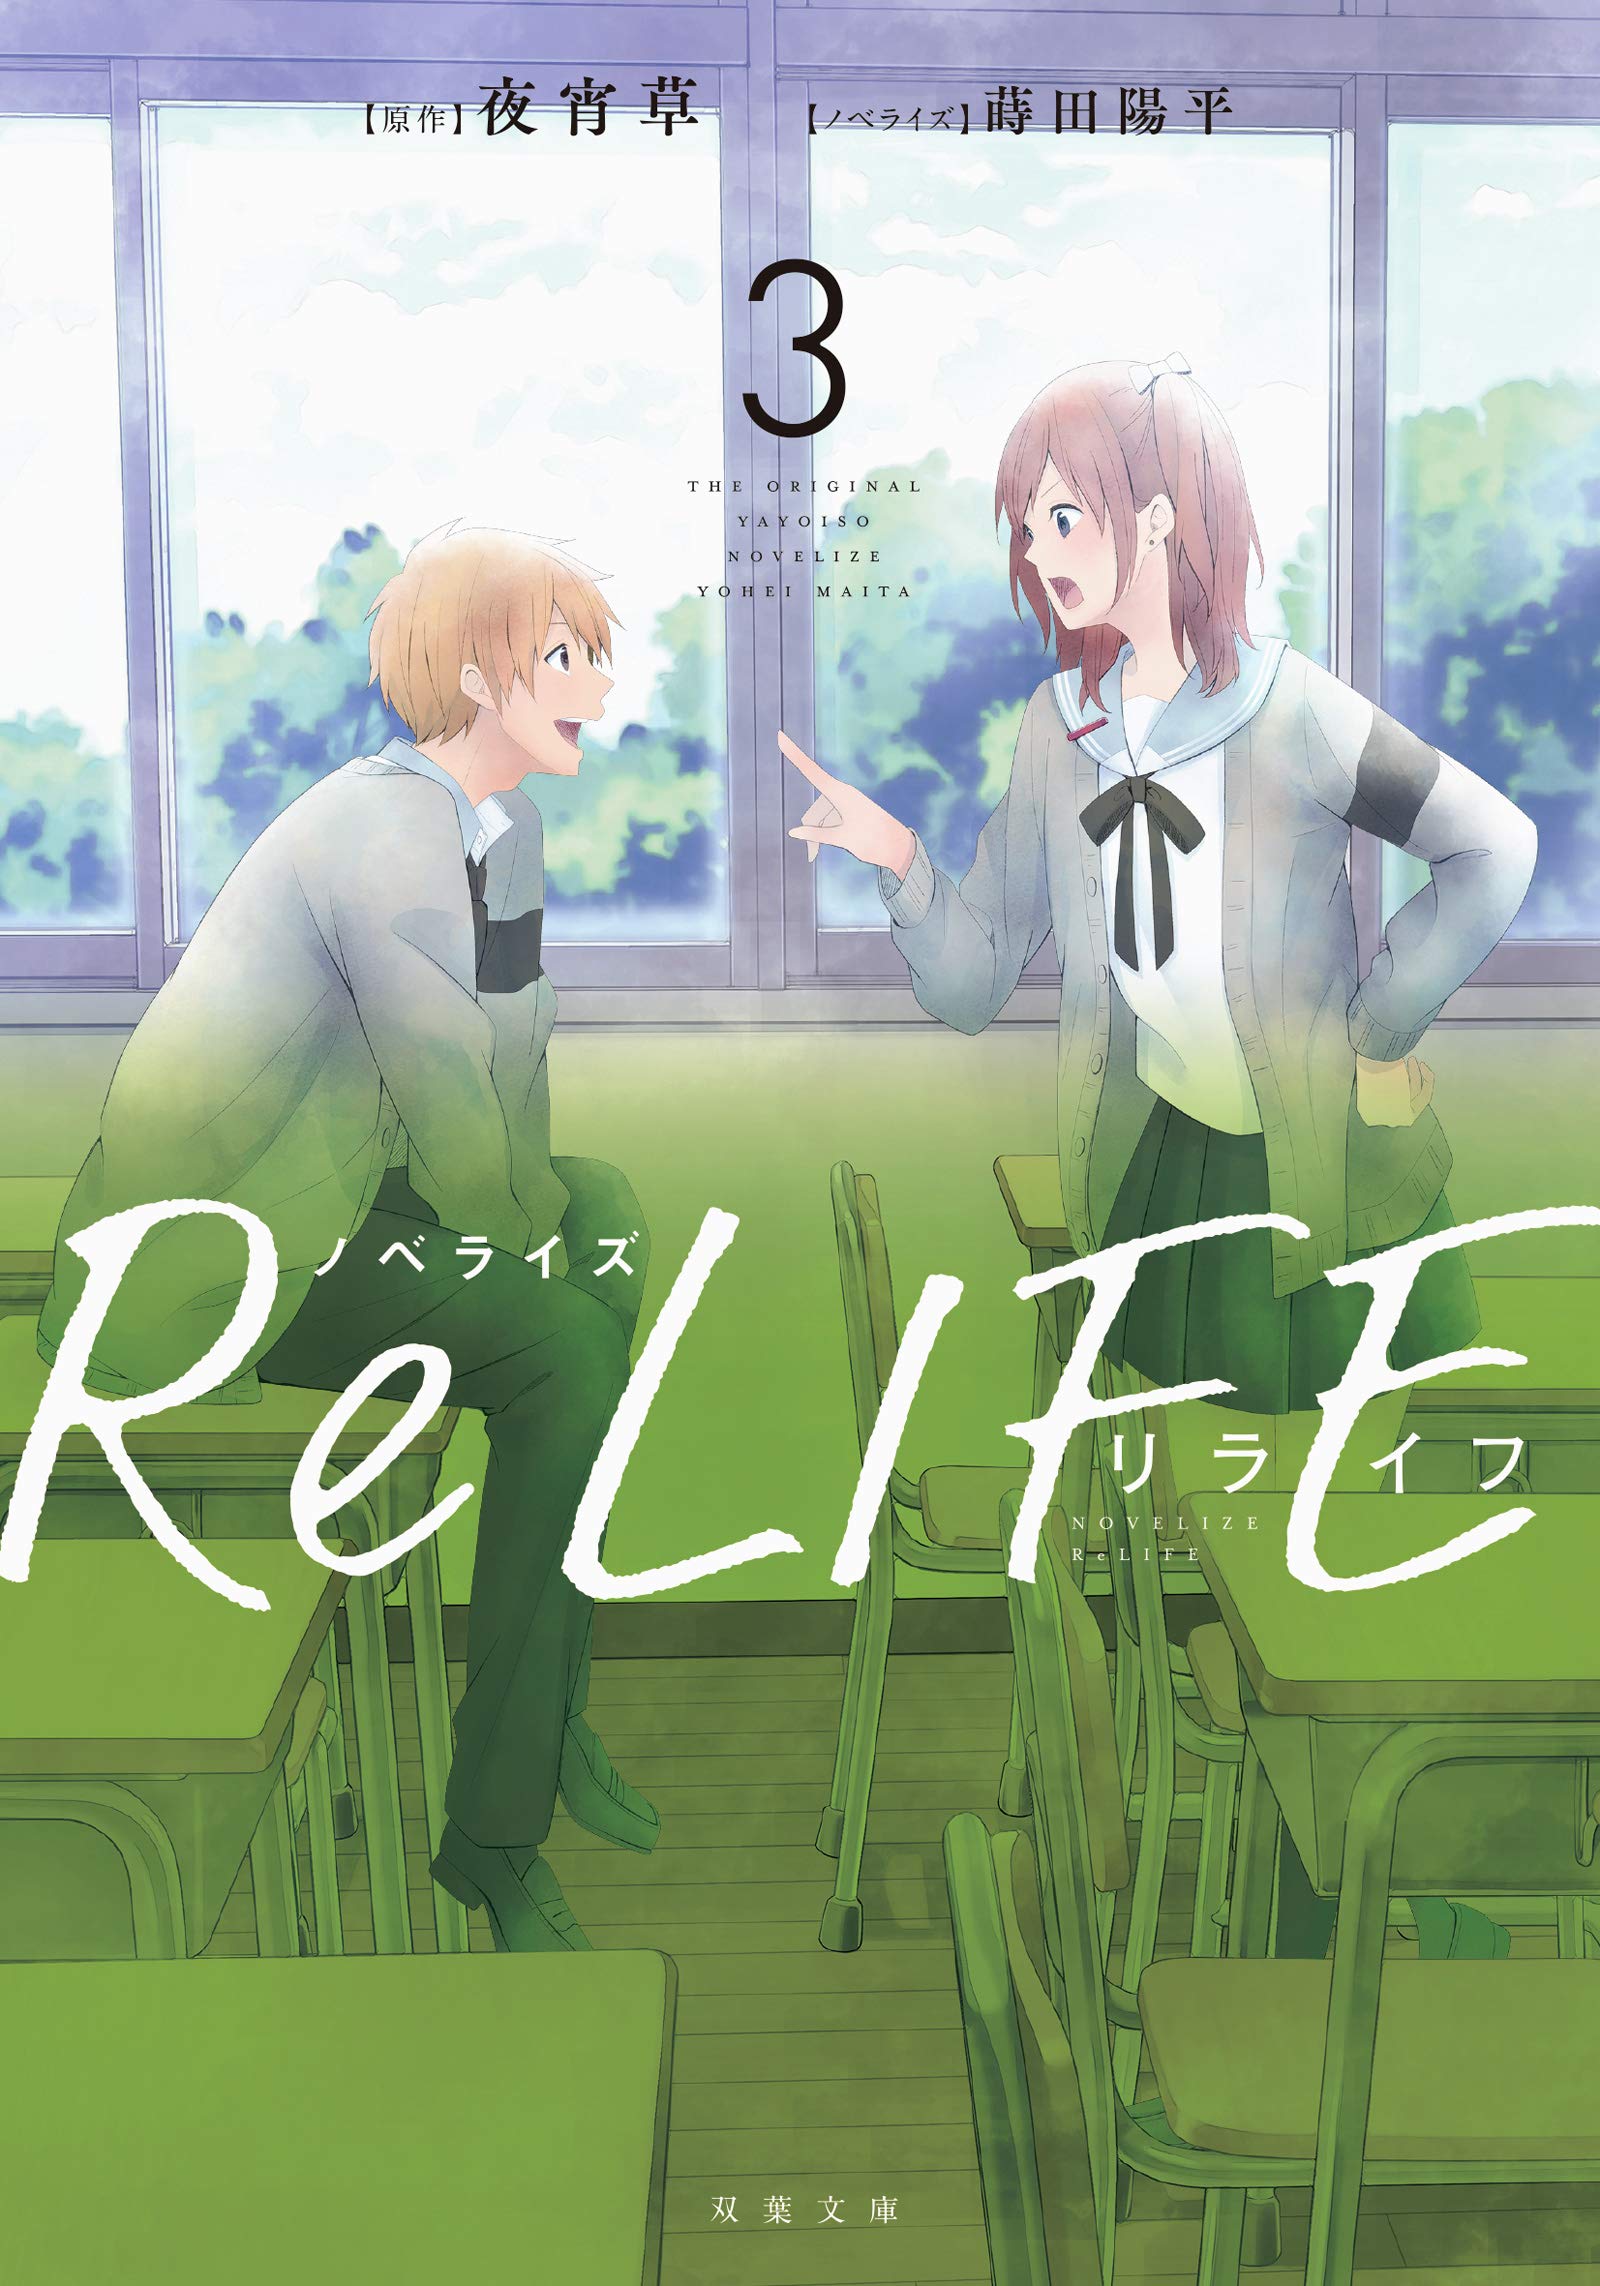 ReLIFE novel 3.jpg